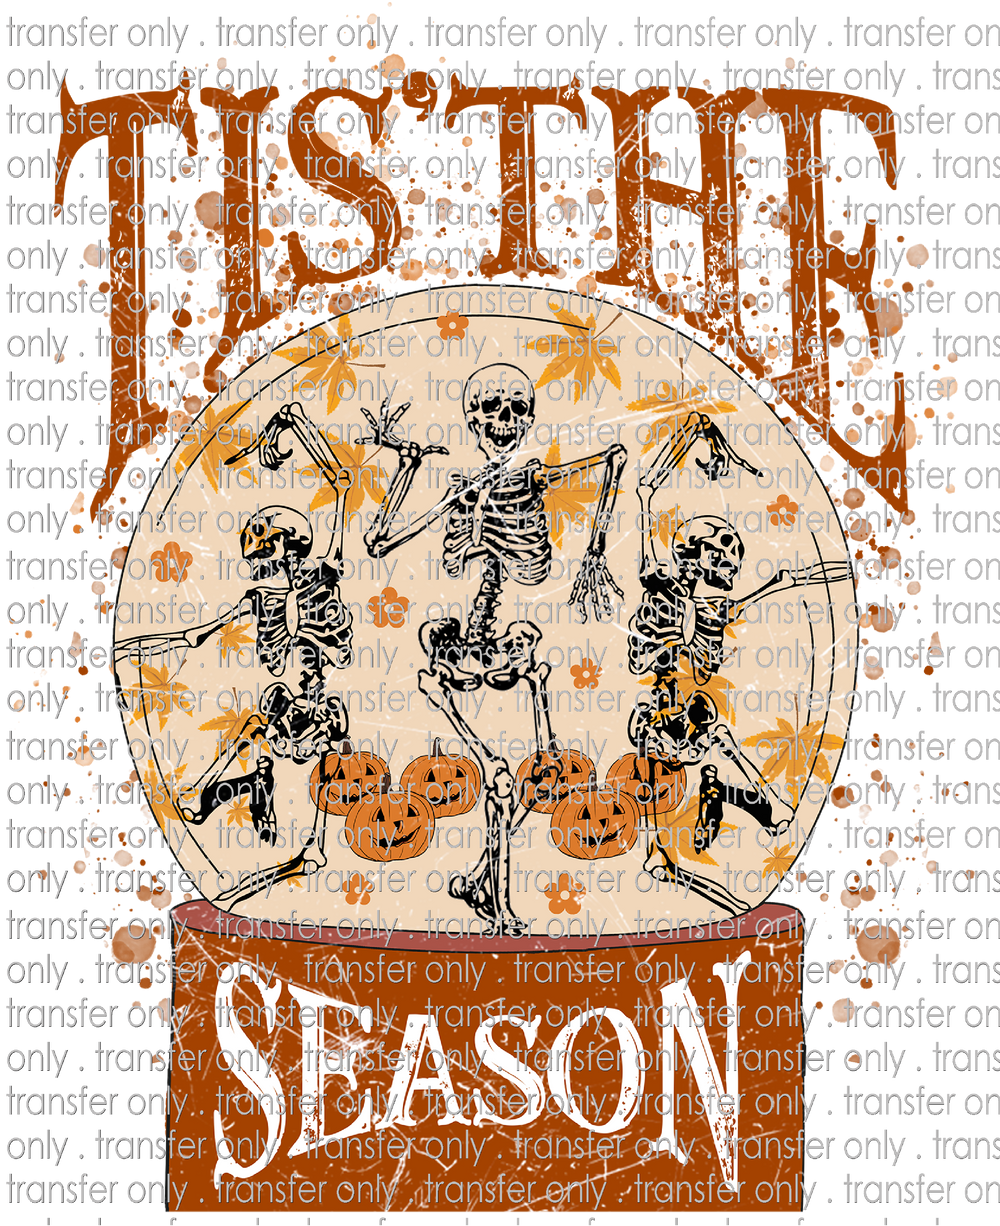 HALLO 186 Tis The Season Skeletons